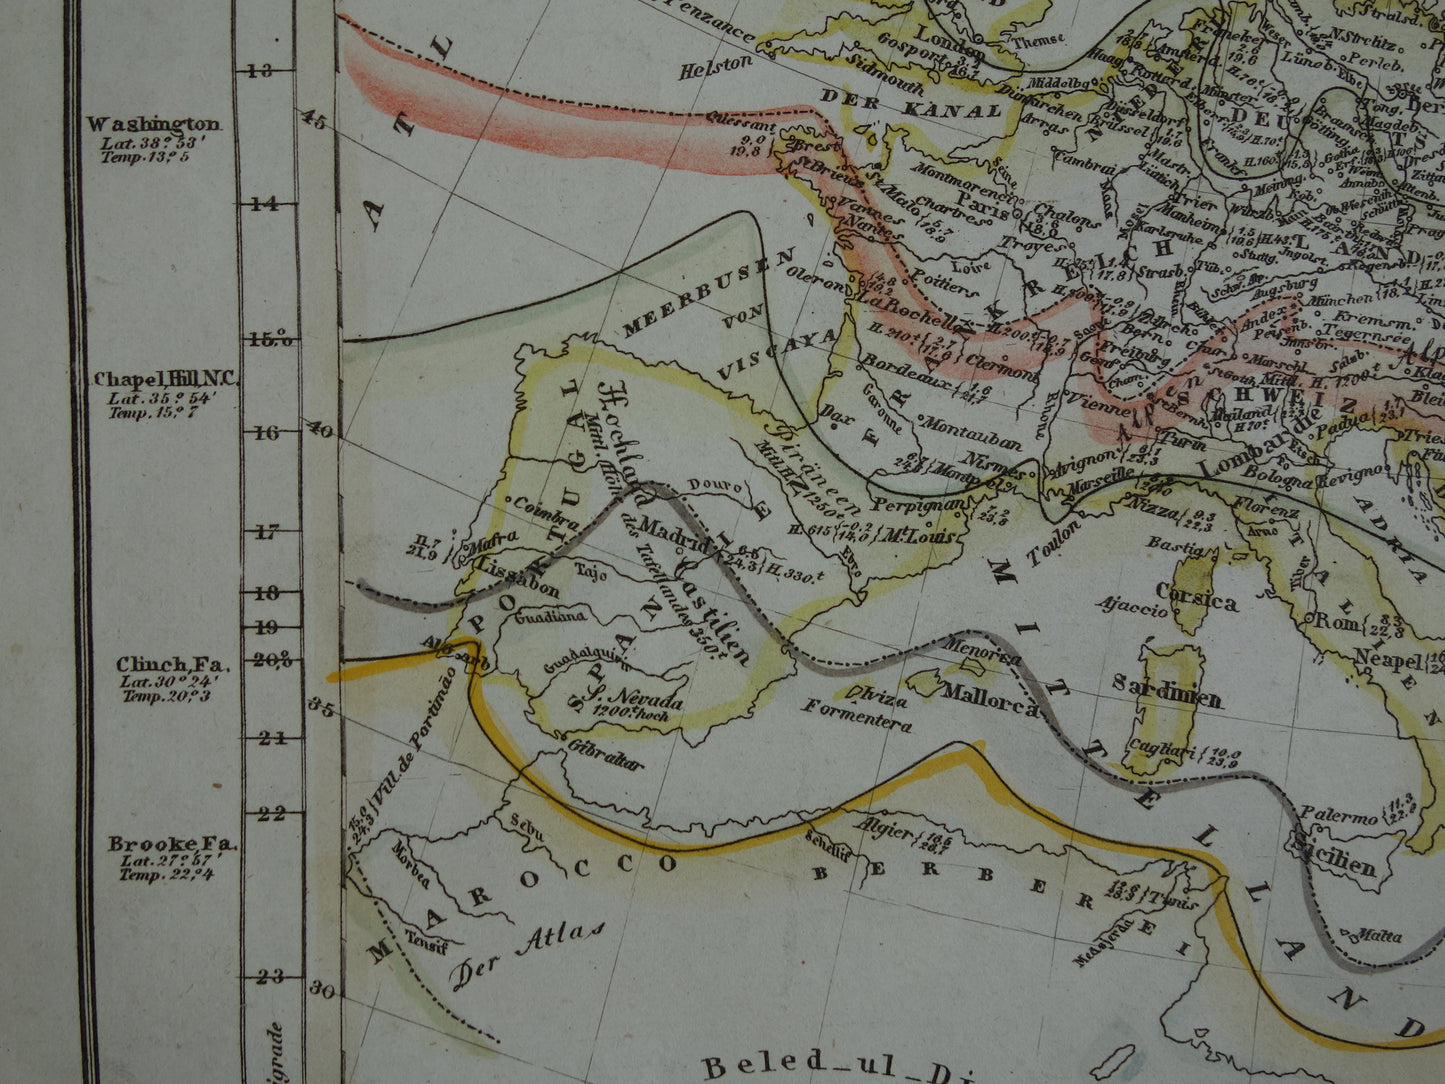 Klimaatkaart van Europa uit 1851 oude handgekleurde kaart temperatuur continent Europa - vintage print